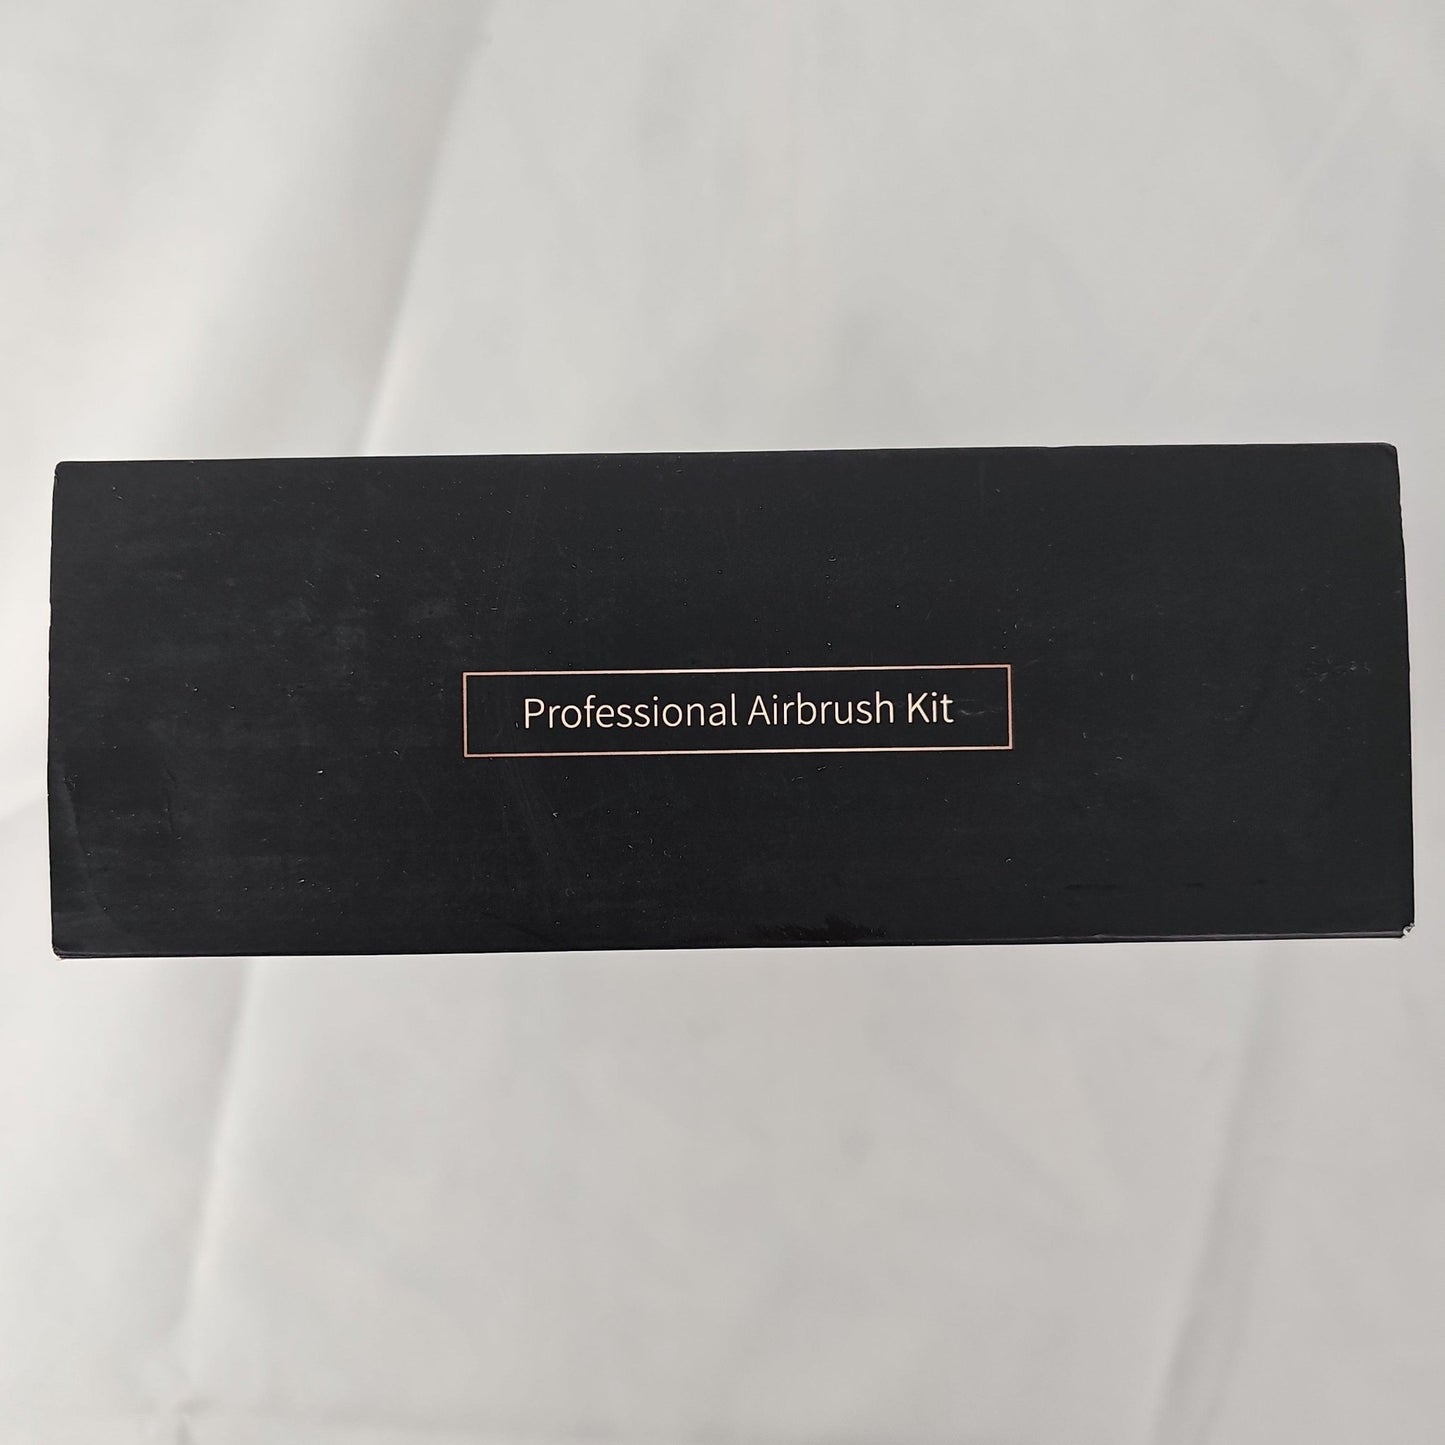 Professional Airbrush Kit Black fehrominger - DQ Distribution